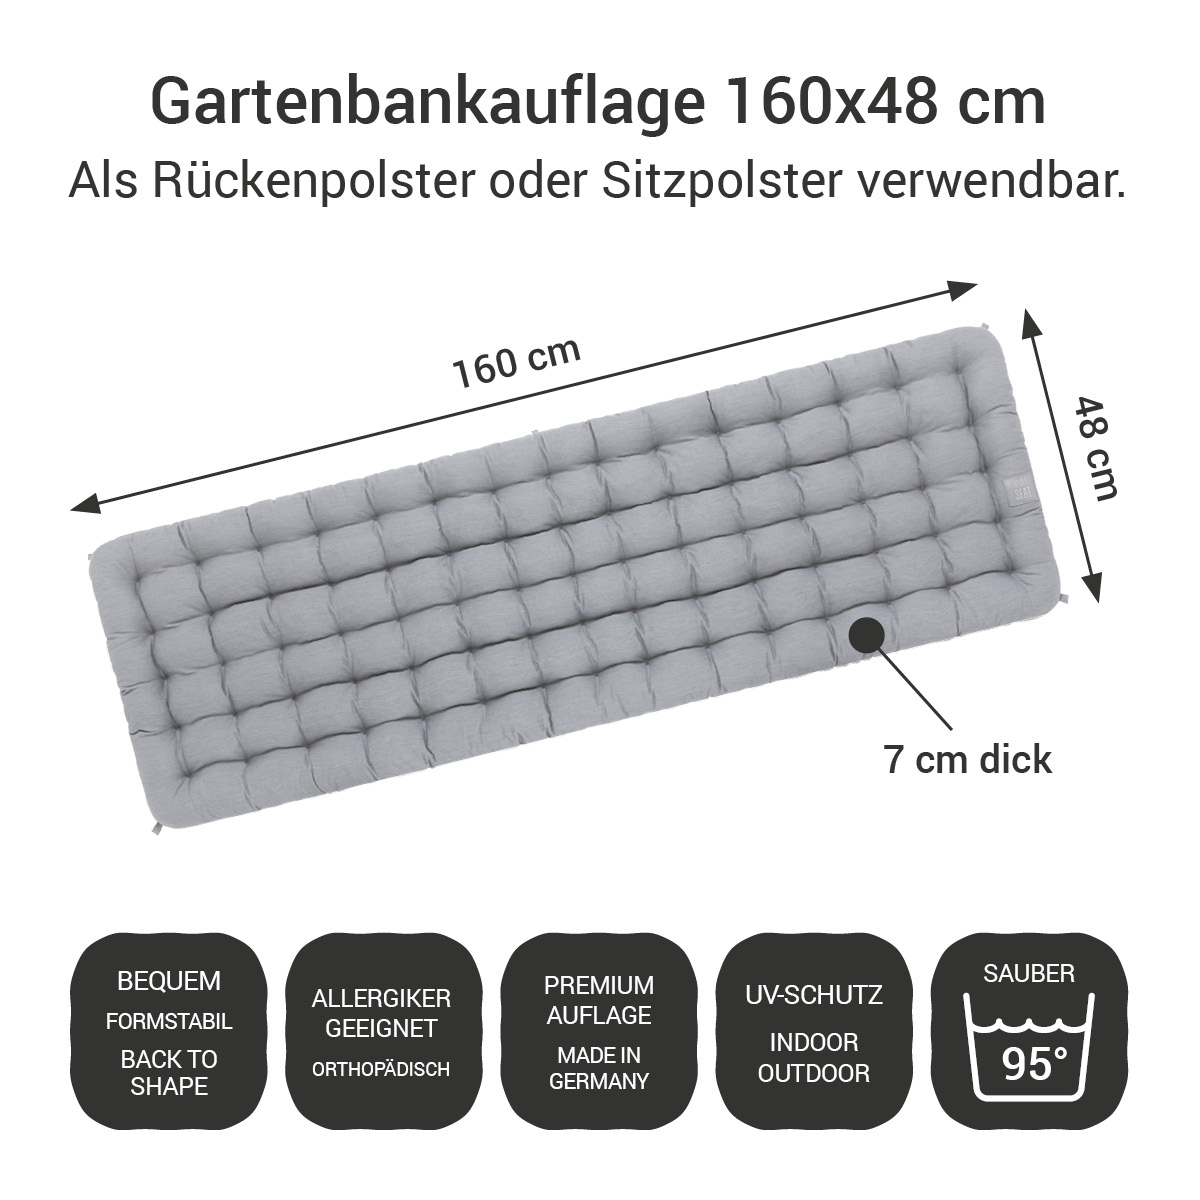 Gartenbankauflage hellgrau | 160x48 cm / 160 x 50 cm | bequem & orthopädisch, komplett im Ganzen waschbar bis 95°C, wetterfest, Made in Germany